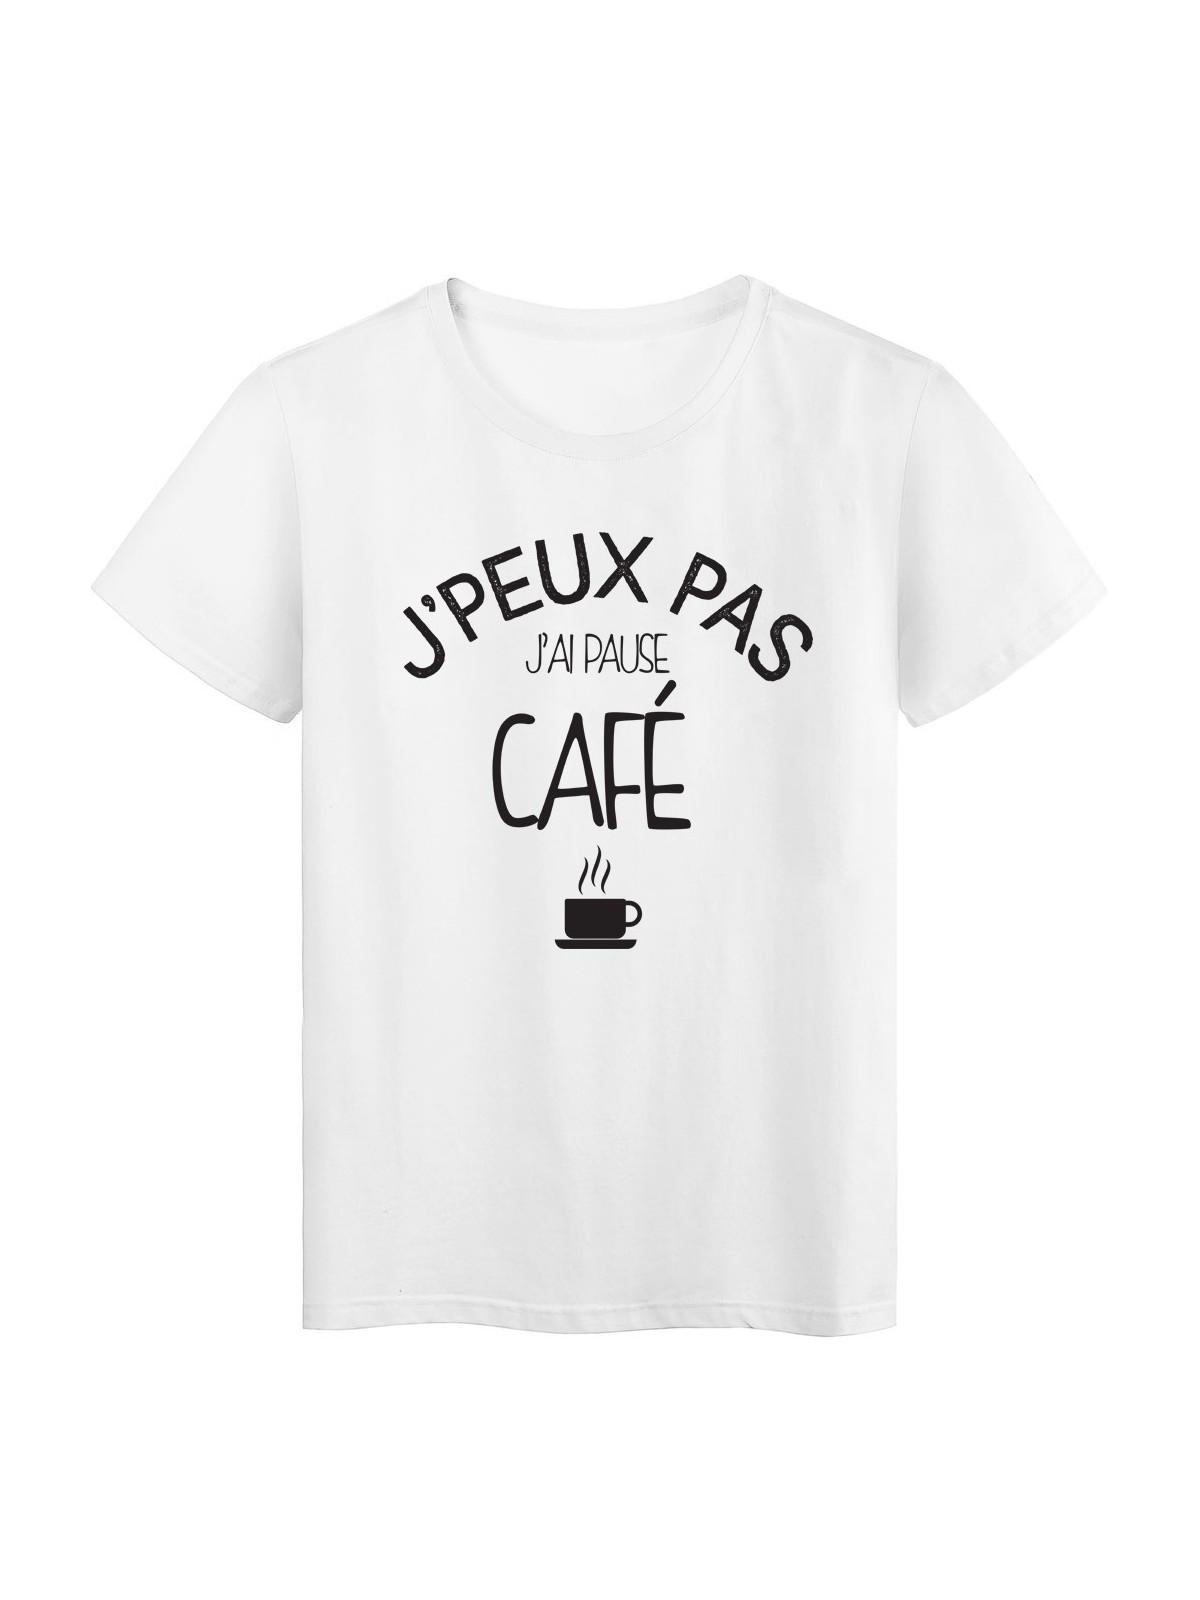 T-Shirt imprimÃ© citation j'peux pas j'ai pause cafÃ©